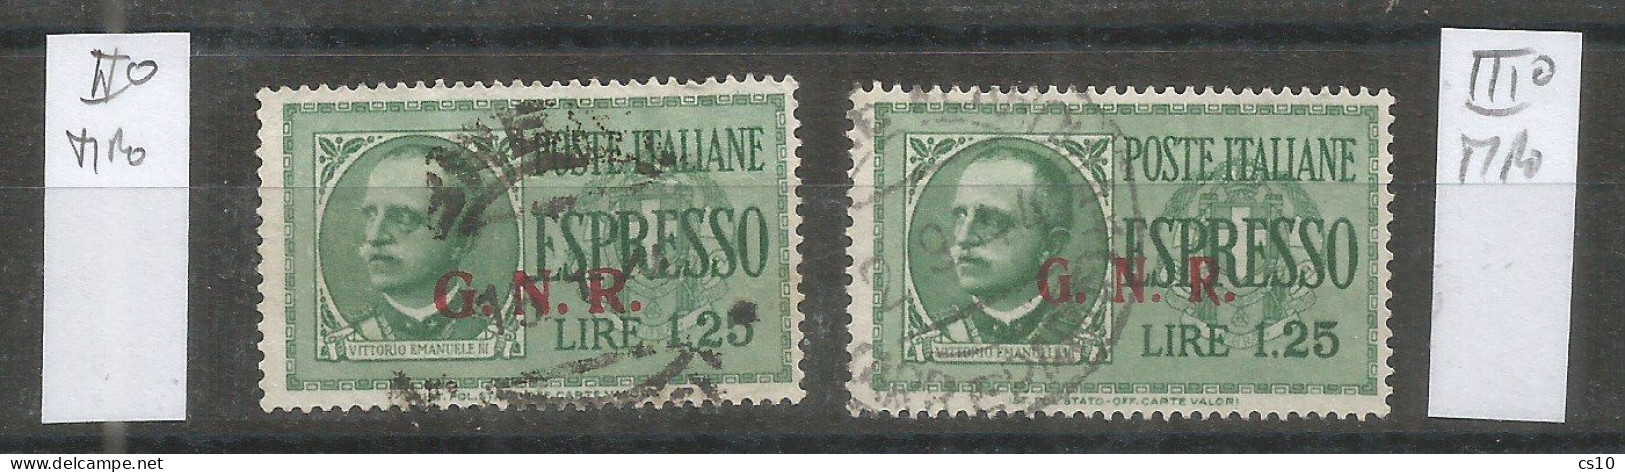 Italia Rep.Sociale Emissioni Guardia Naz. Repubblicana - Espresso L.1,25 USATO  II° Tipo + III° Tipo - Poste Exprèsse